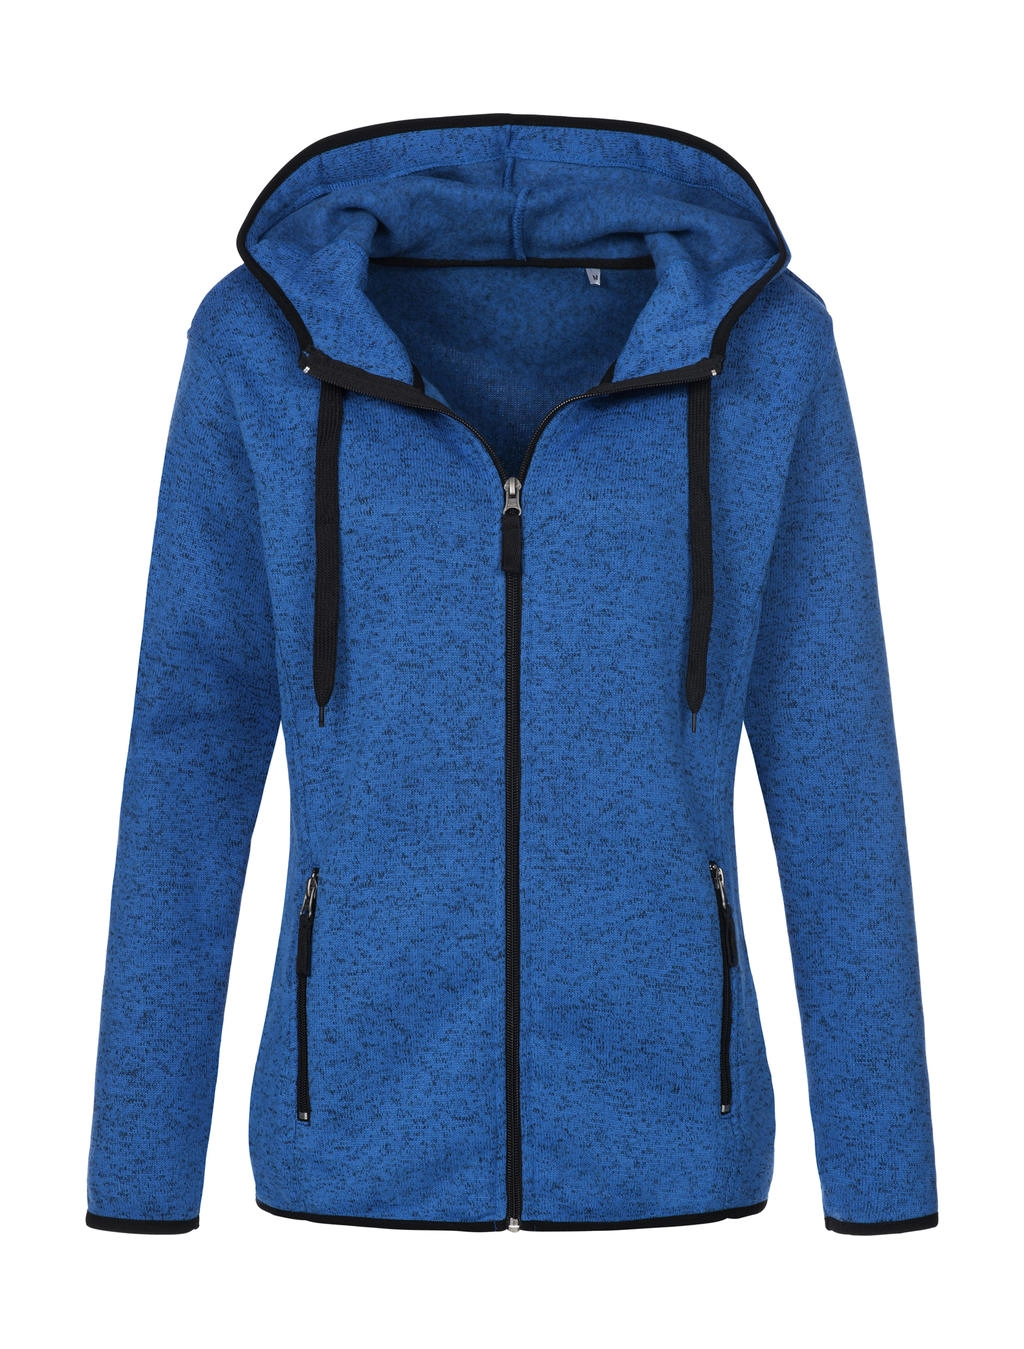 Knit Fleece Jacket Women zum Besticken und Bedrucken in der Farbe Blue Melange mit Ihren Logo, Schriftzug oder Motiv.